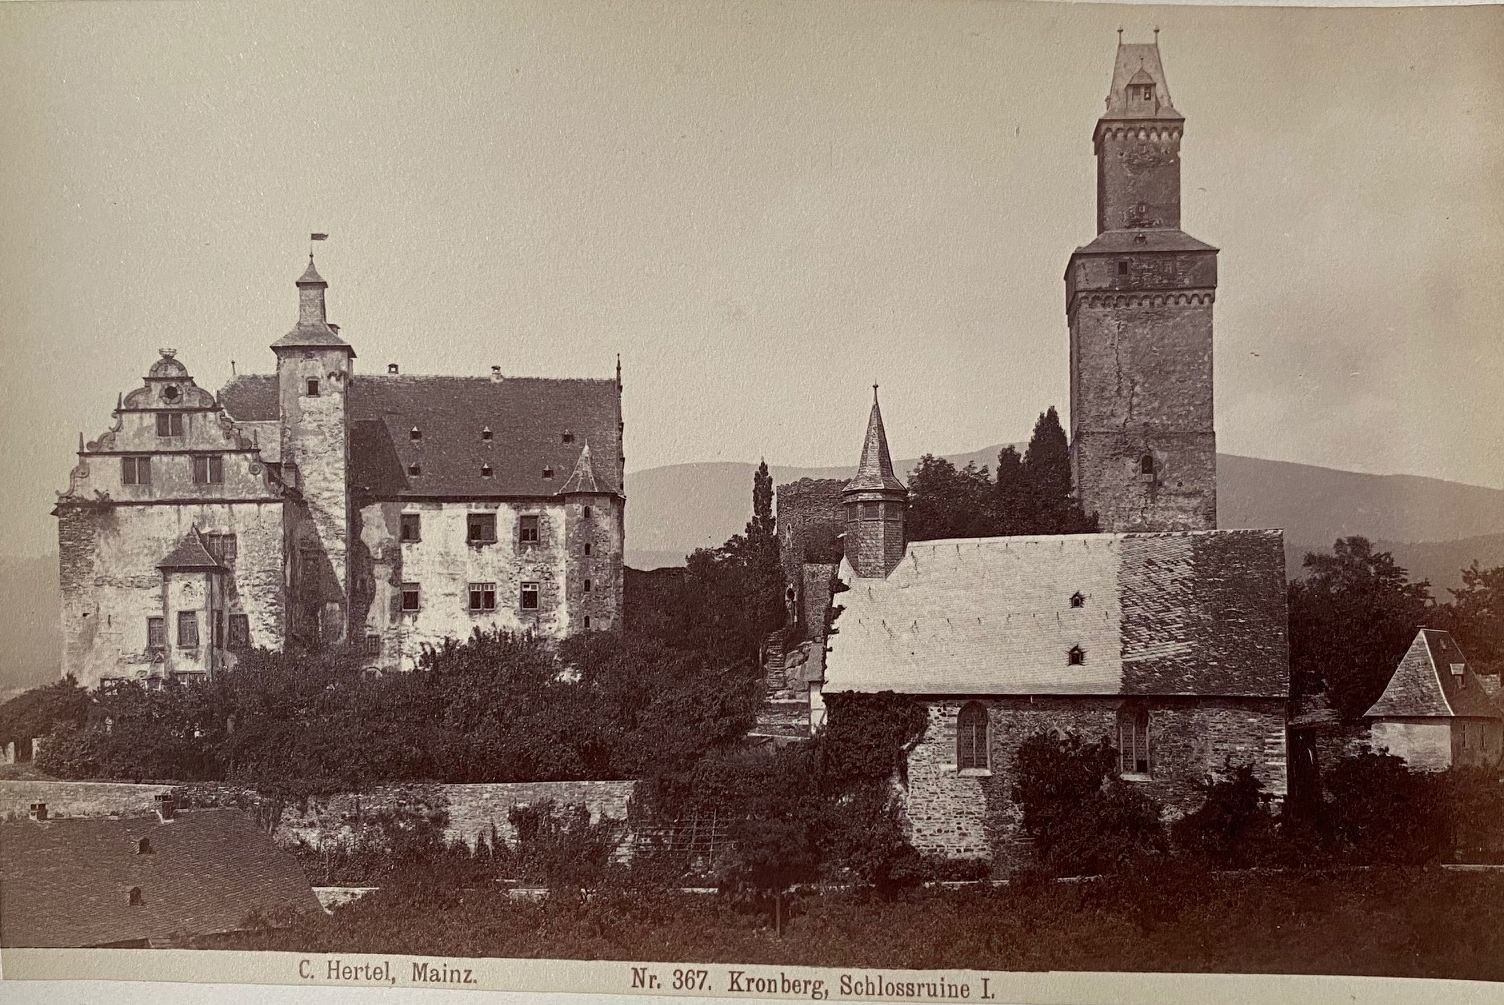 Fotografie, Carl Hertel No. 367, Kronberg Schlossruine I, ca. 1885 (Taunus-Rhein-Main - Regionalgeschichtliche Sammlung Dr. Stefan Naas CC BY-NC-SA)